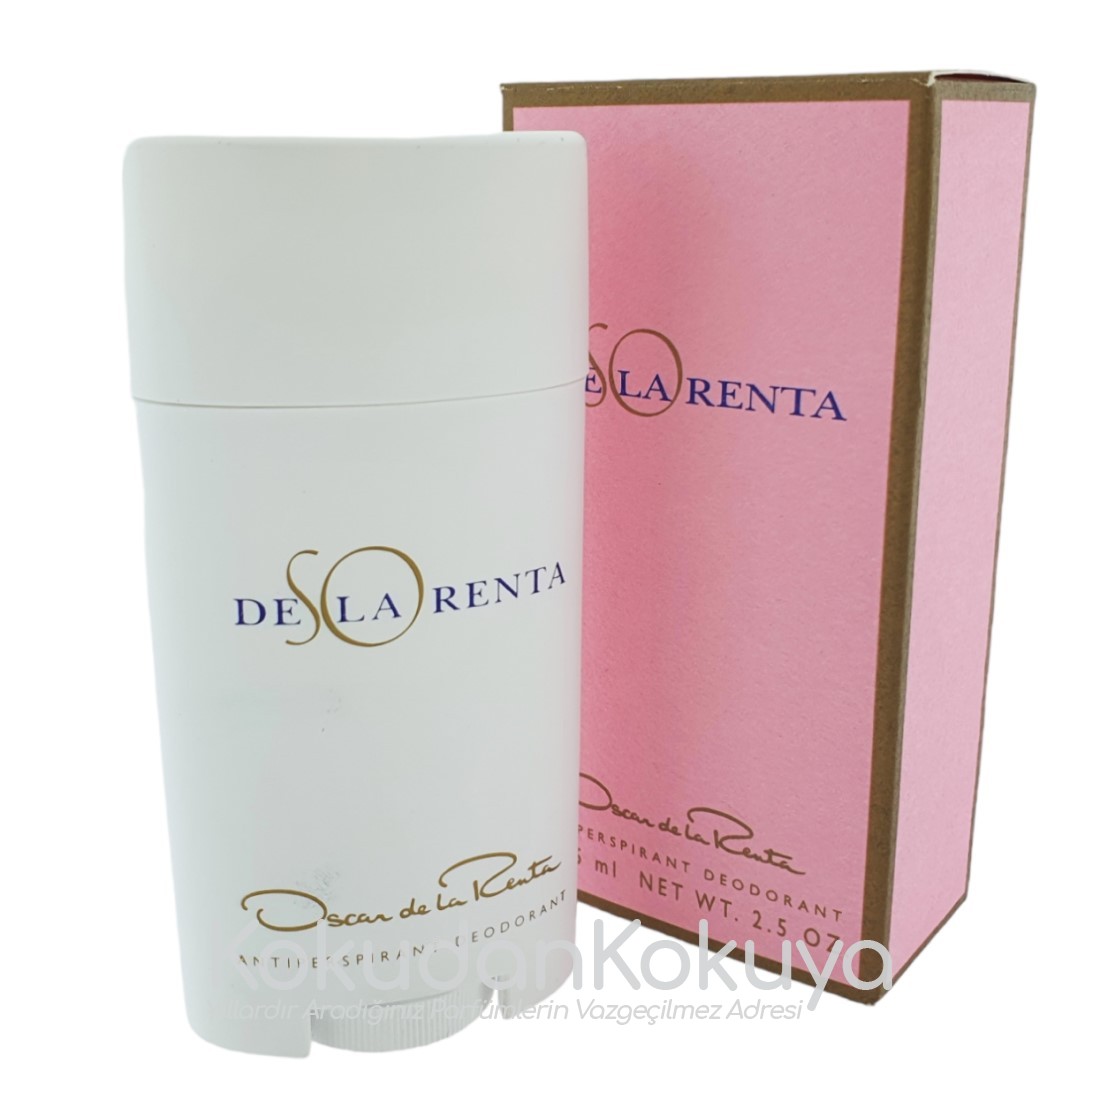 OSCAR de la RENTA So De La Renta (Vintage) Deodorant Kadın 75ml Deodorant Stick 